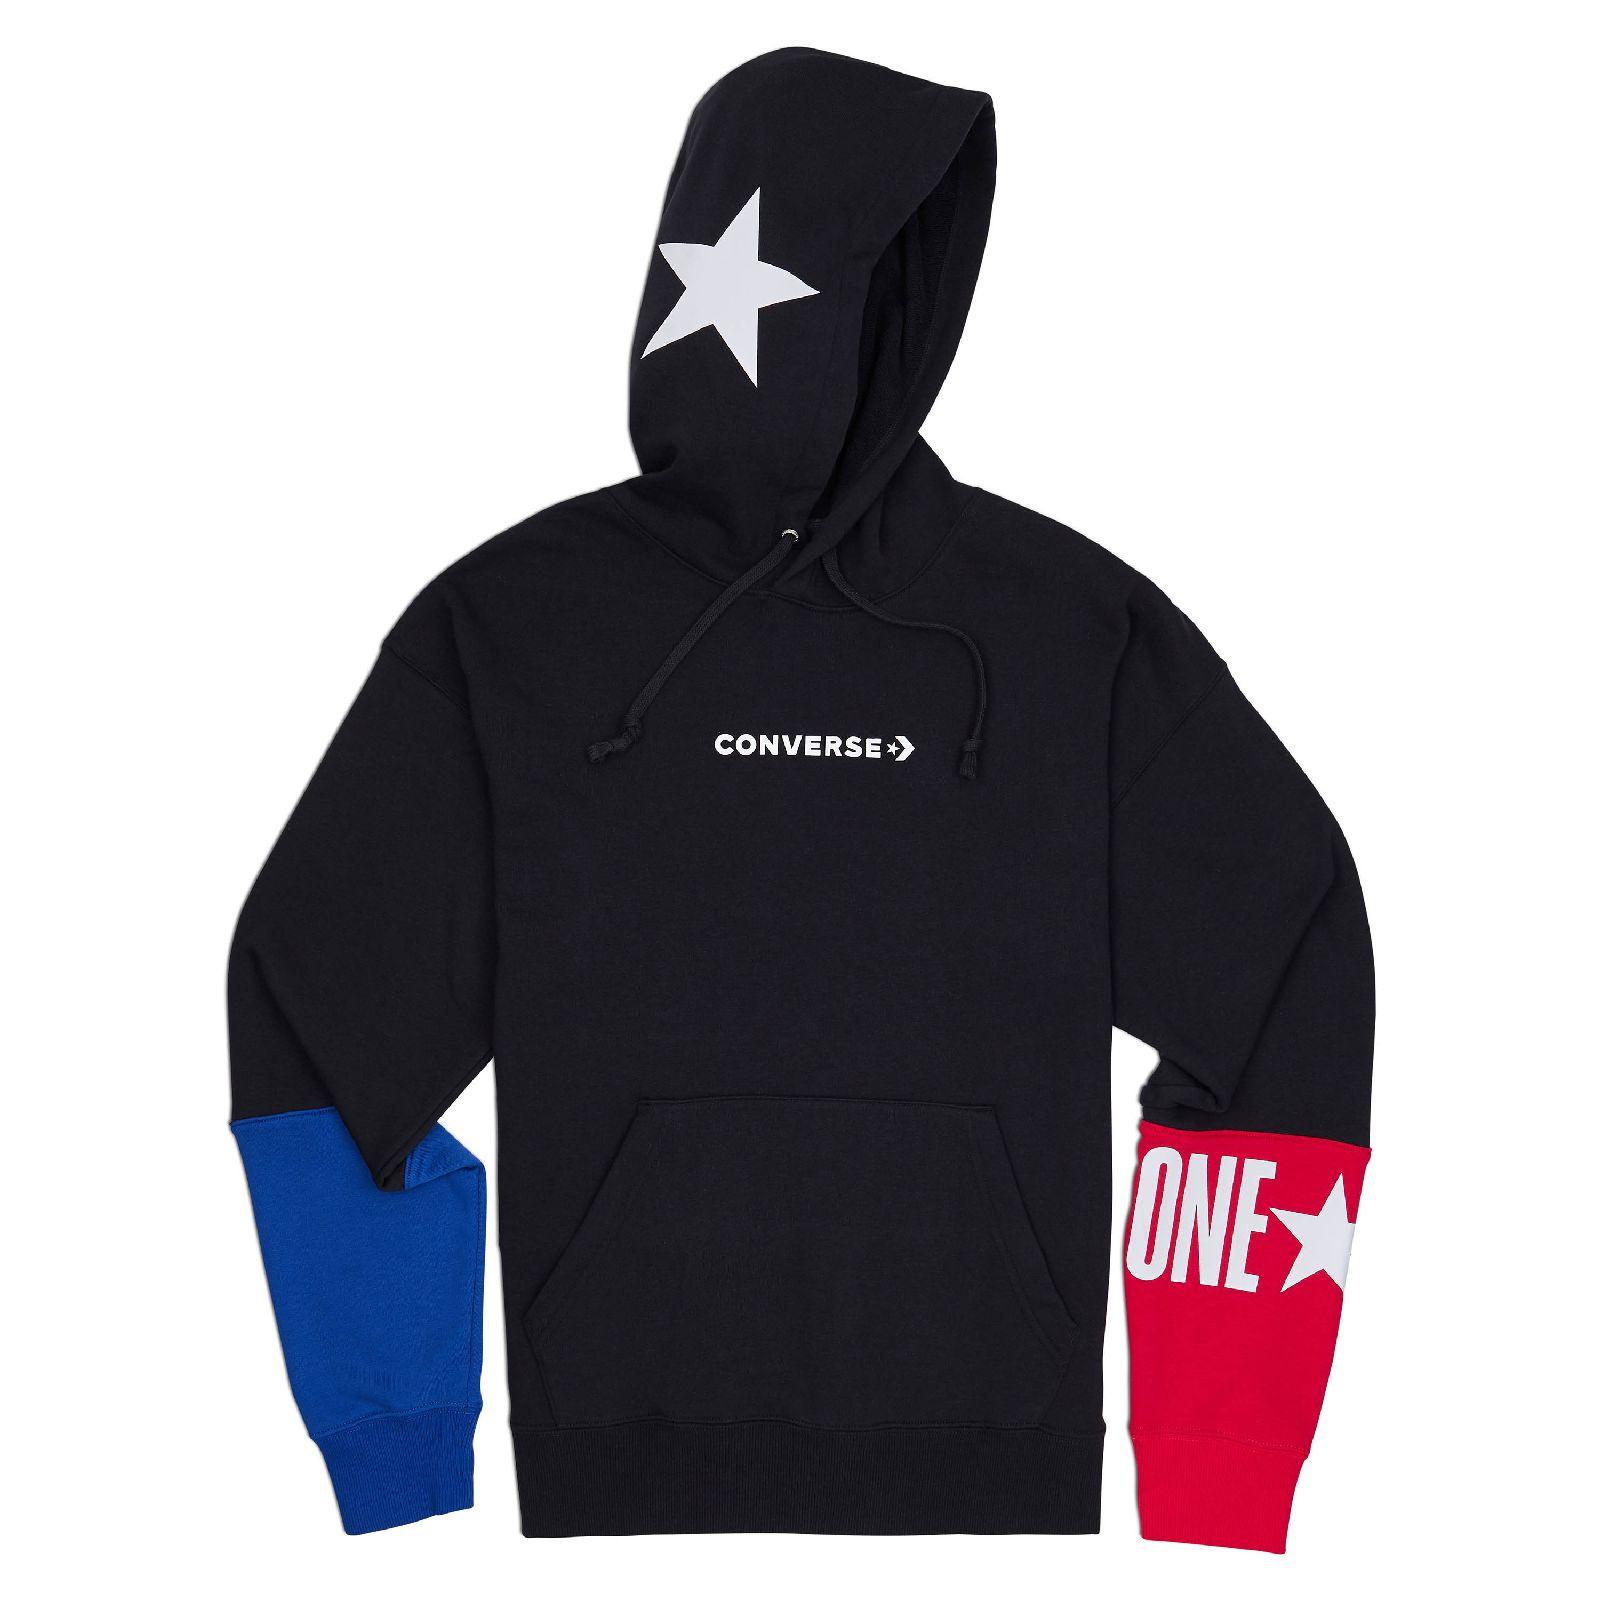 converse one star mens hoodie